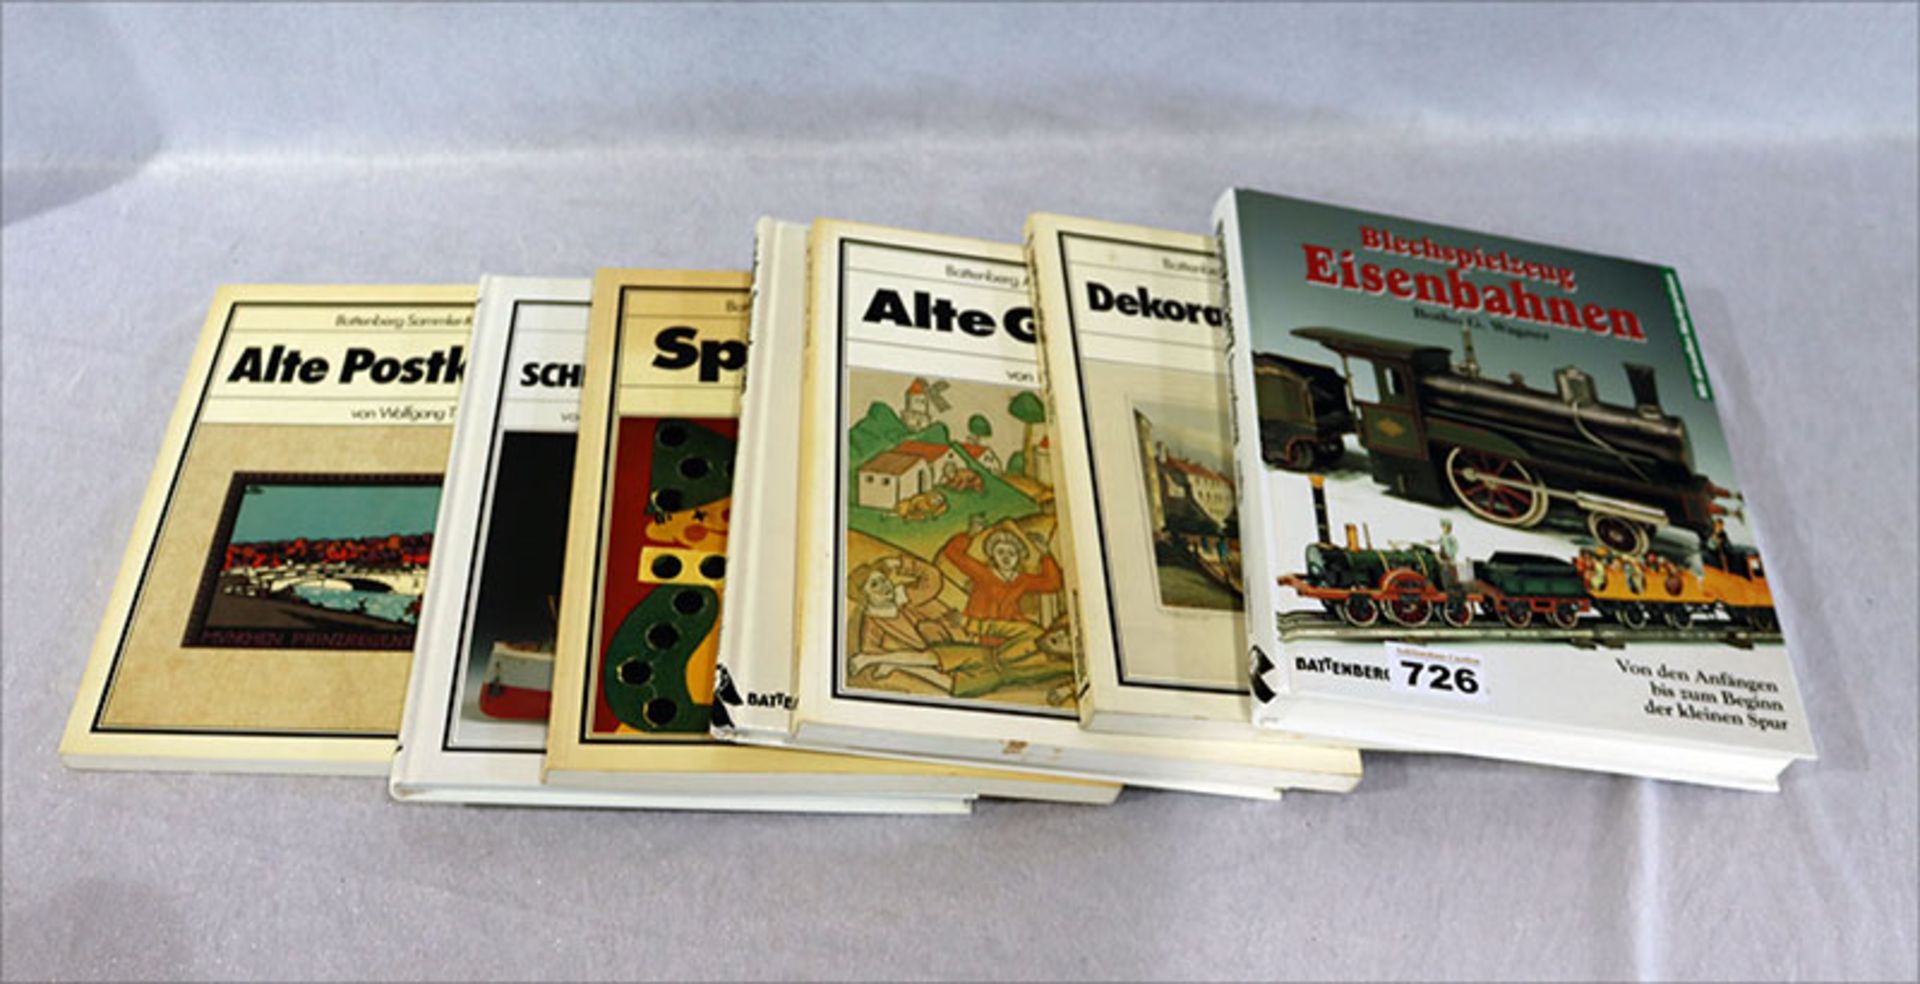 Konvolut von Battenberg Kunstbüchern: Blechspielzeug Eisenbahnen, Alte Postkarten, Graphik,